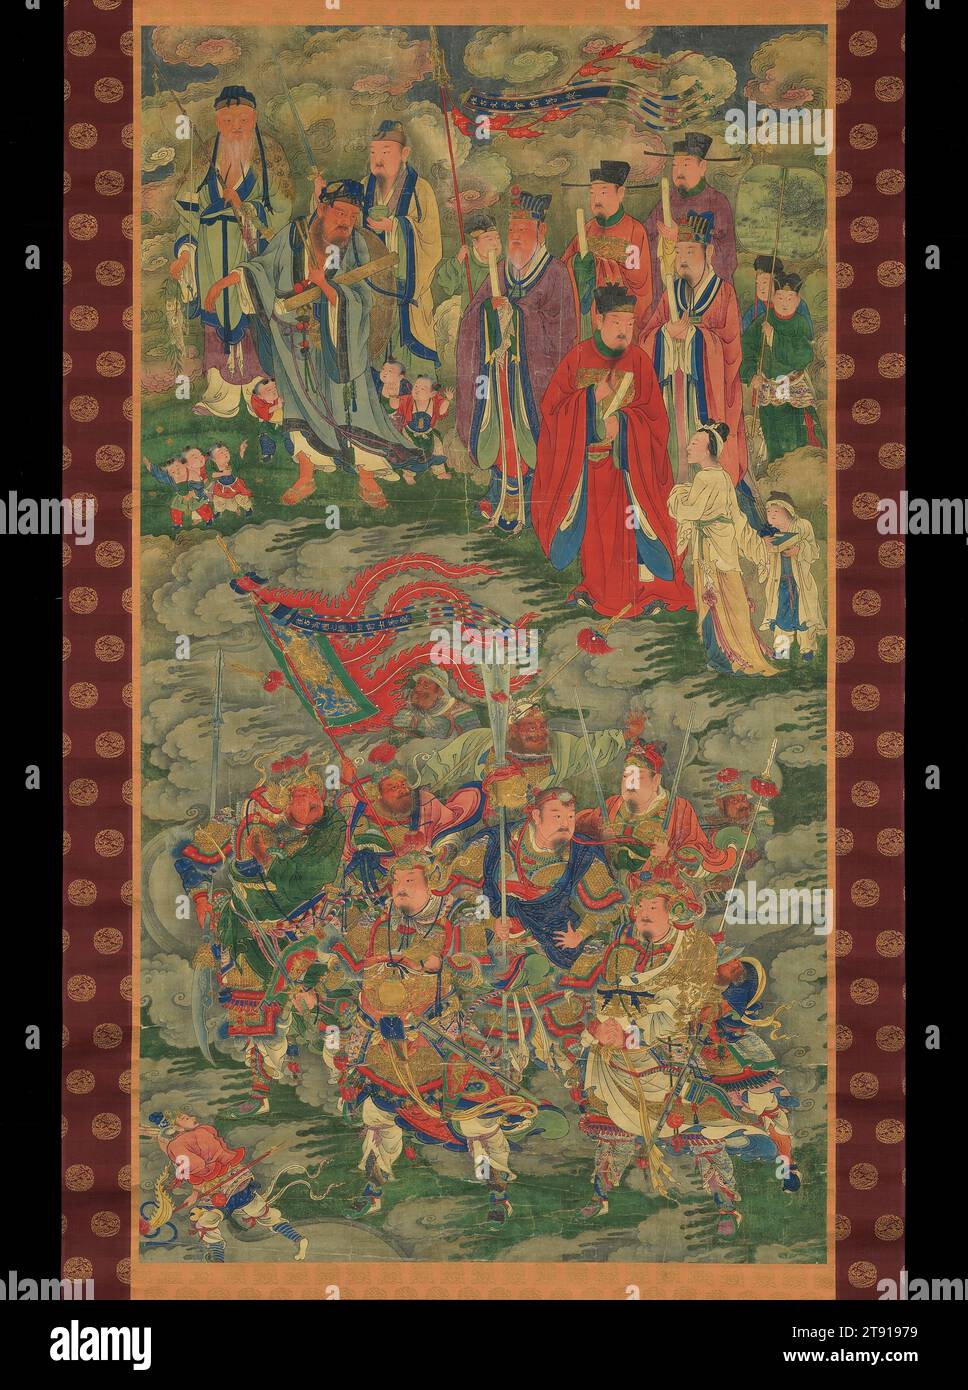 Generäle, die für ihr Land starben, und Beamte früherer Zeiten, ca. 1500, 53 3/16 x 29 7/16 Zoll. (135,1 x 74,8 cm) (Bild)94 3/4 x 39 1/8 Zoll (240,7 x 99,4 cm) (Halterung, mit Walze), Tinte und Farbe auf Seide; hängende Rolle, China, 15.-16. Jahrhundert, diese farbenfrohe Rolle war einst Teil eines „Wasser-Land-Ritual“ (Shuilu)-Gemäldes, die in buddhistischen Leichenriten zu Ehren der Seelen der Toten verwendet wurden. Zwei Figurengruppen sind durch Inschriften in Gold auf Spruchbändern gekennzeichnet, die über ihren Köpfen fliegen. Die acht Figuren, die eine Rüstung im unteren Teil des Gemäldes tragen, sind Generäle, die gestorben sind Stockfoto